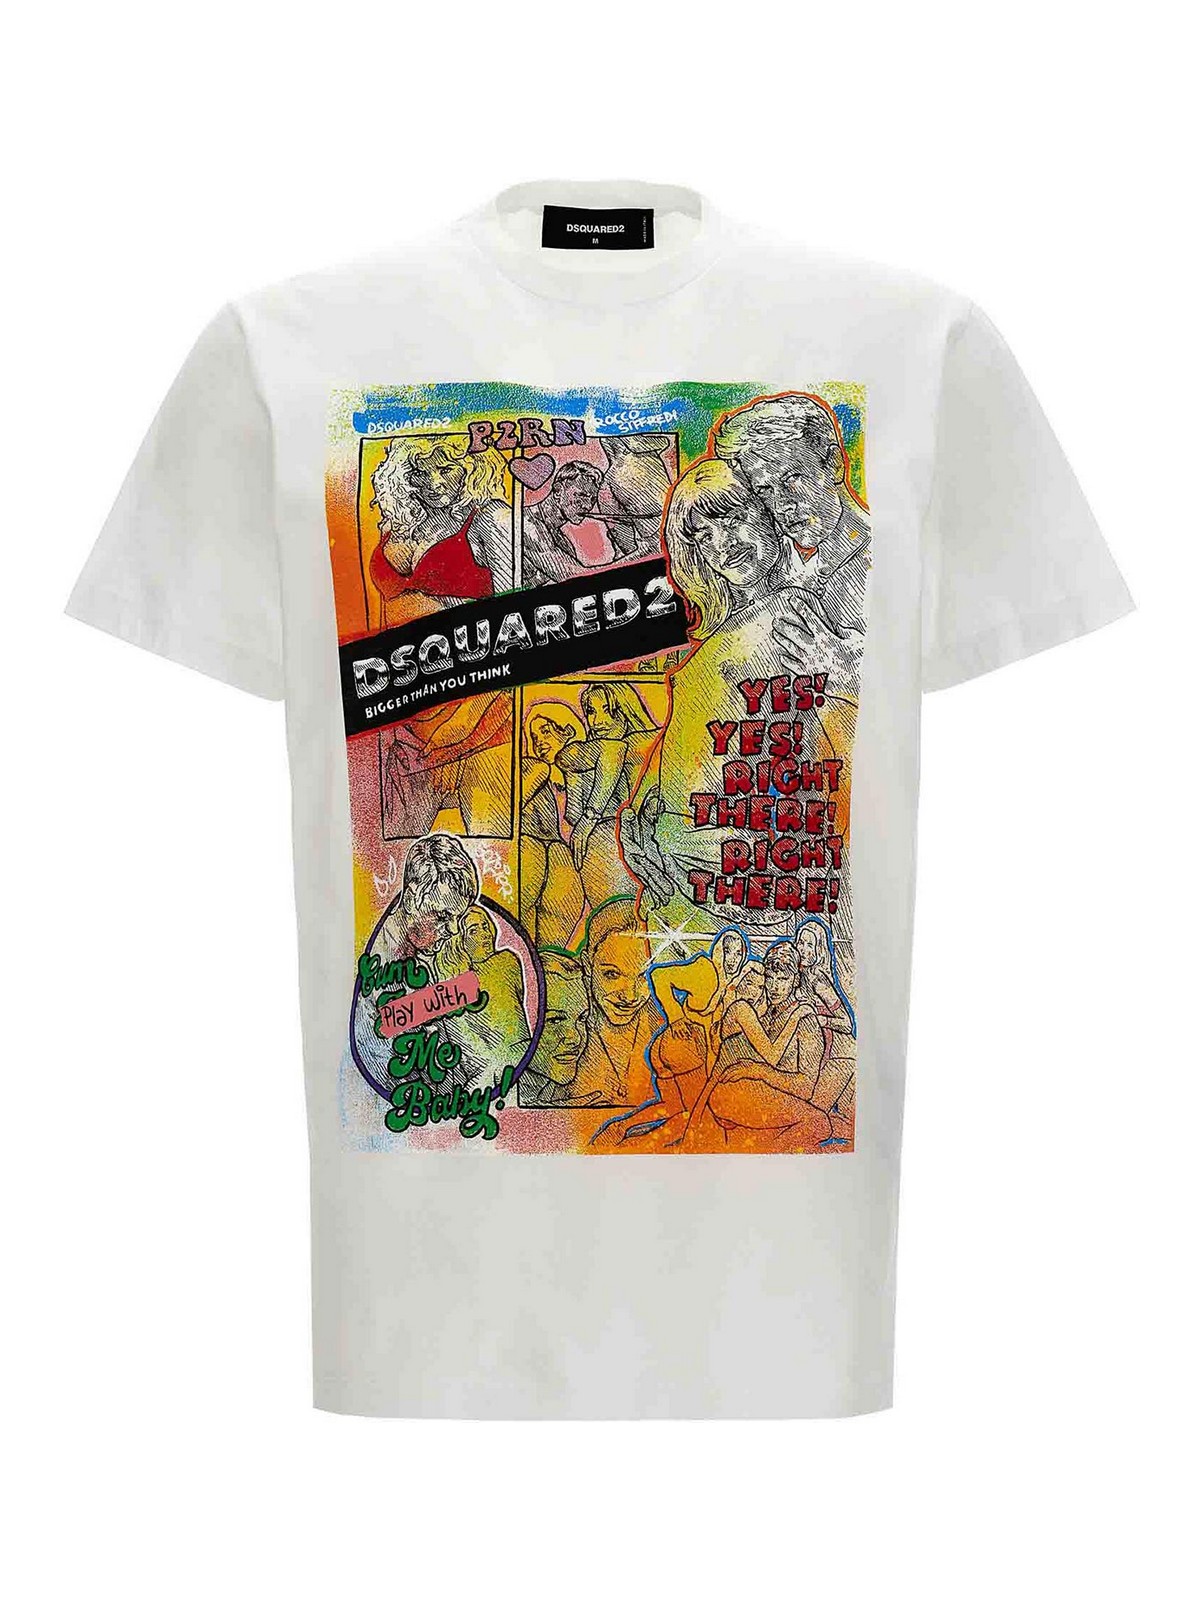 Shop Dsquared2 Camiseta - Blanco